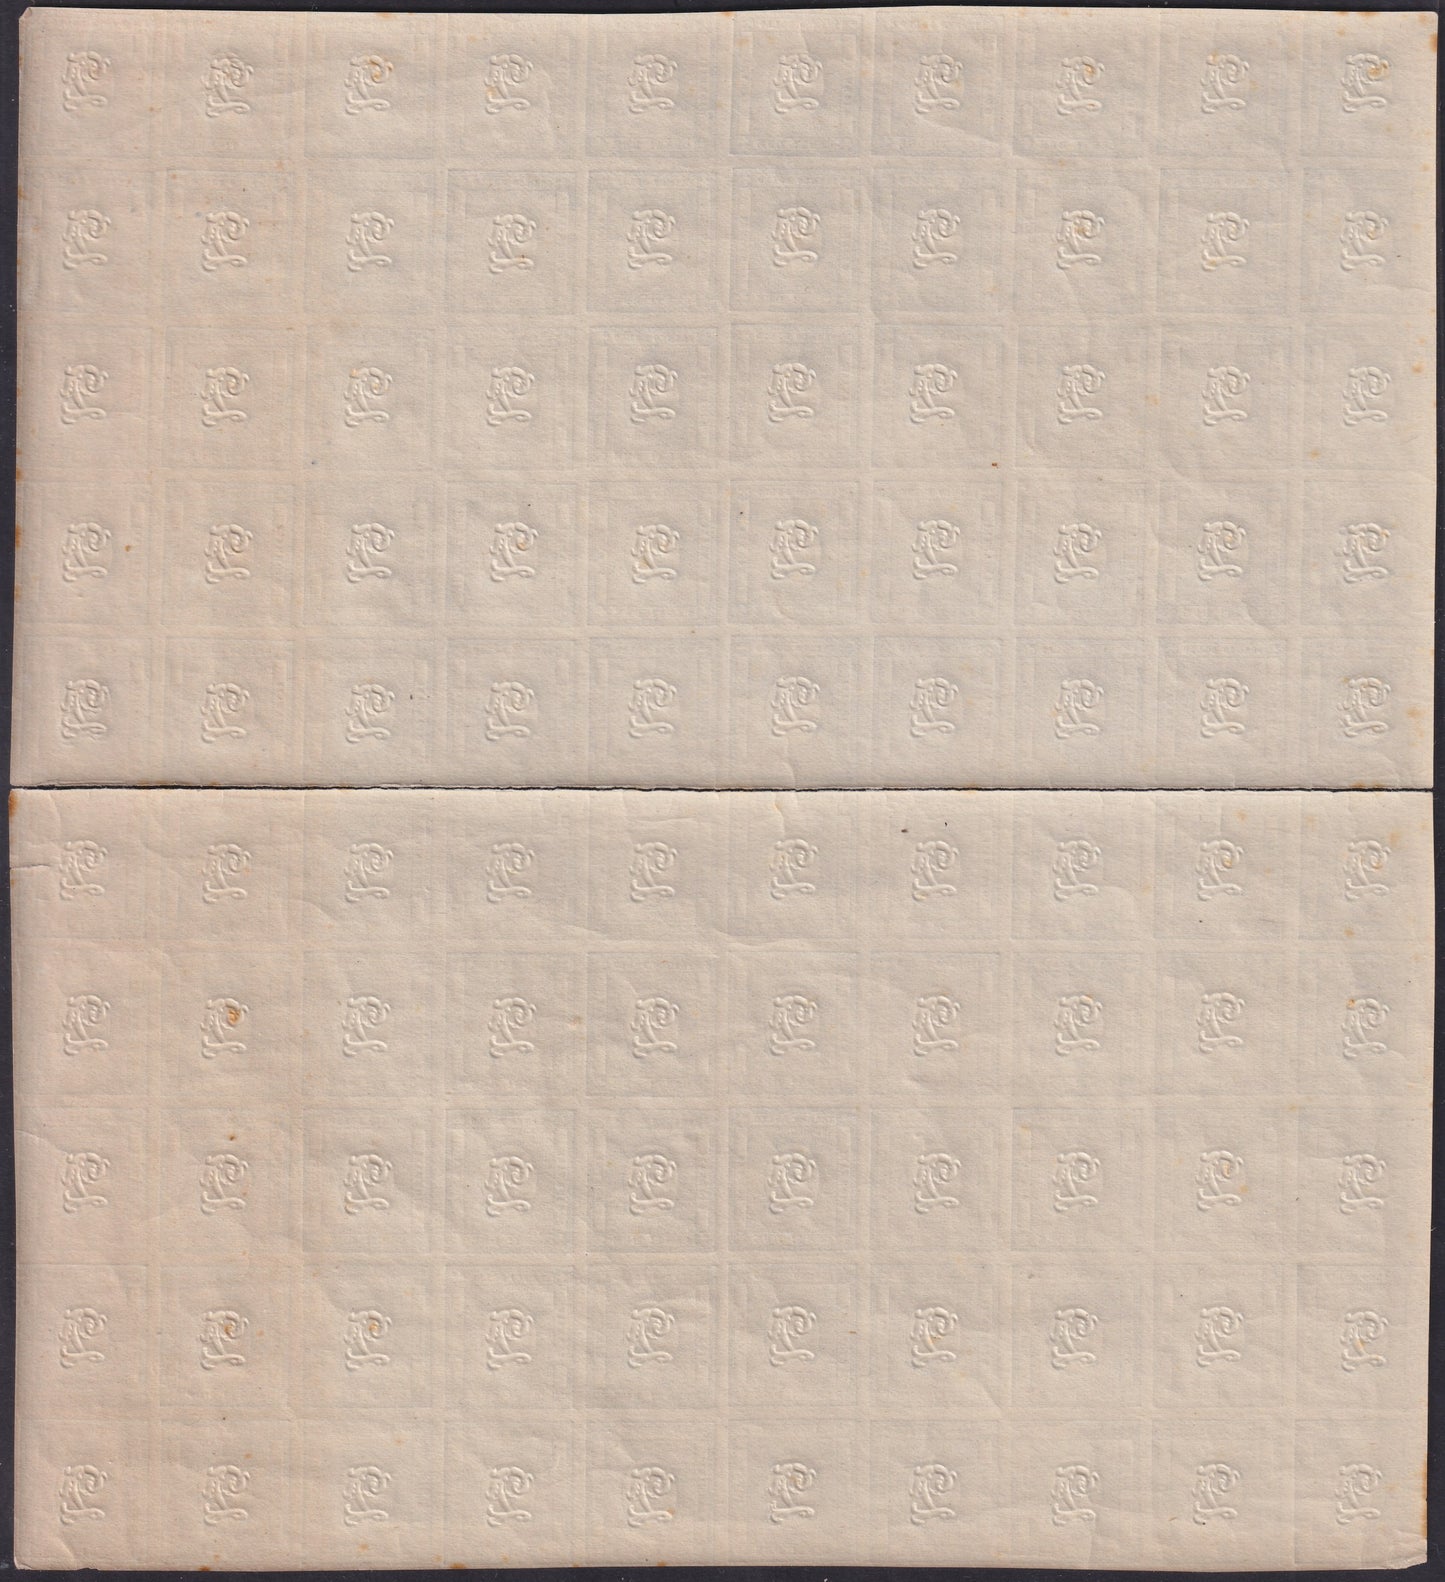 1861/63 - Stampati c. 2 grigio verdastro foglio completo di 100 esemplari, nuovo con gomma integra (20b).